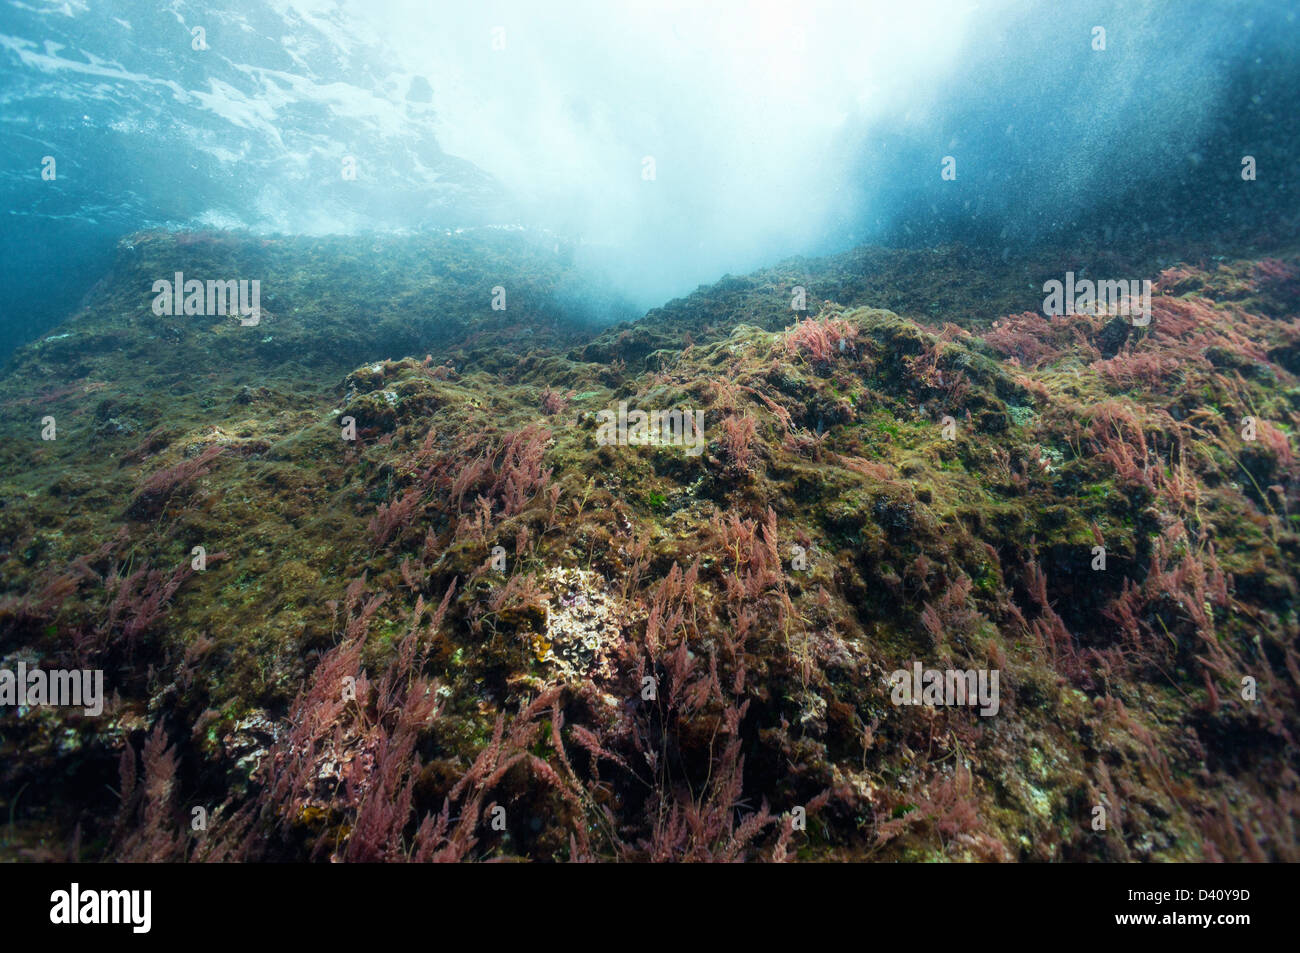 Las algas en las rocas cerca de la superficie del mar, vista submarina, Europa Foto de stock